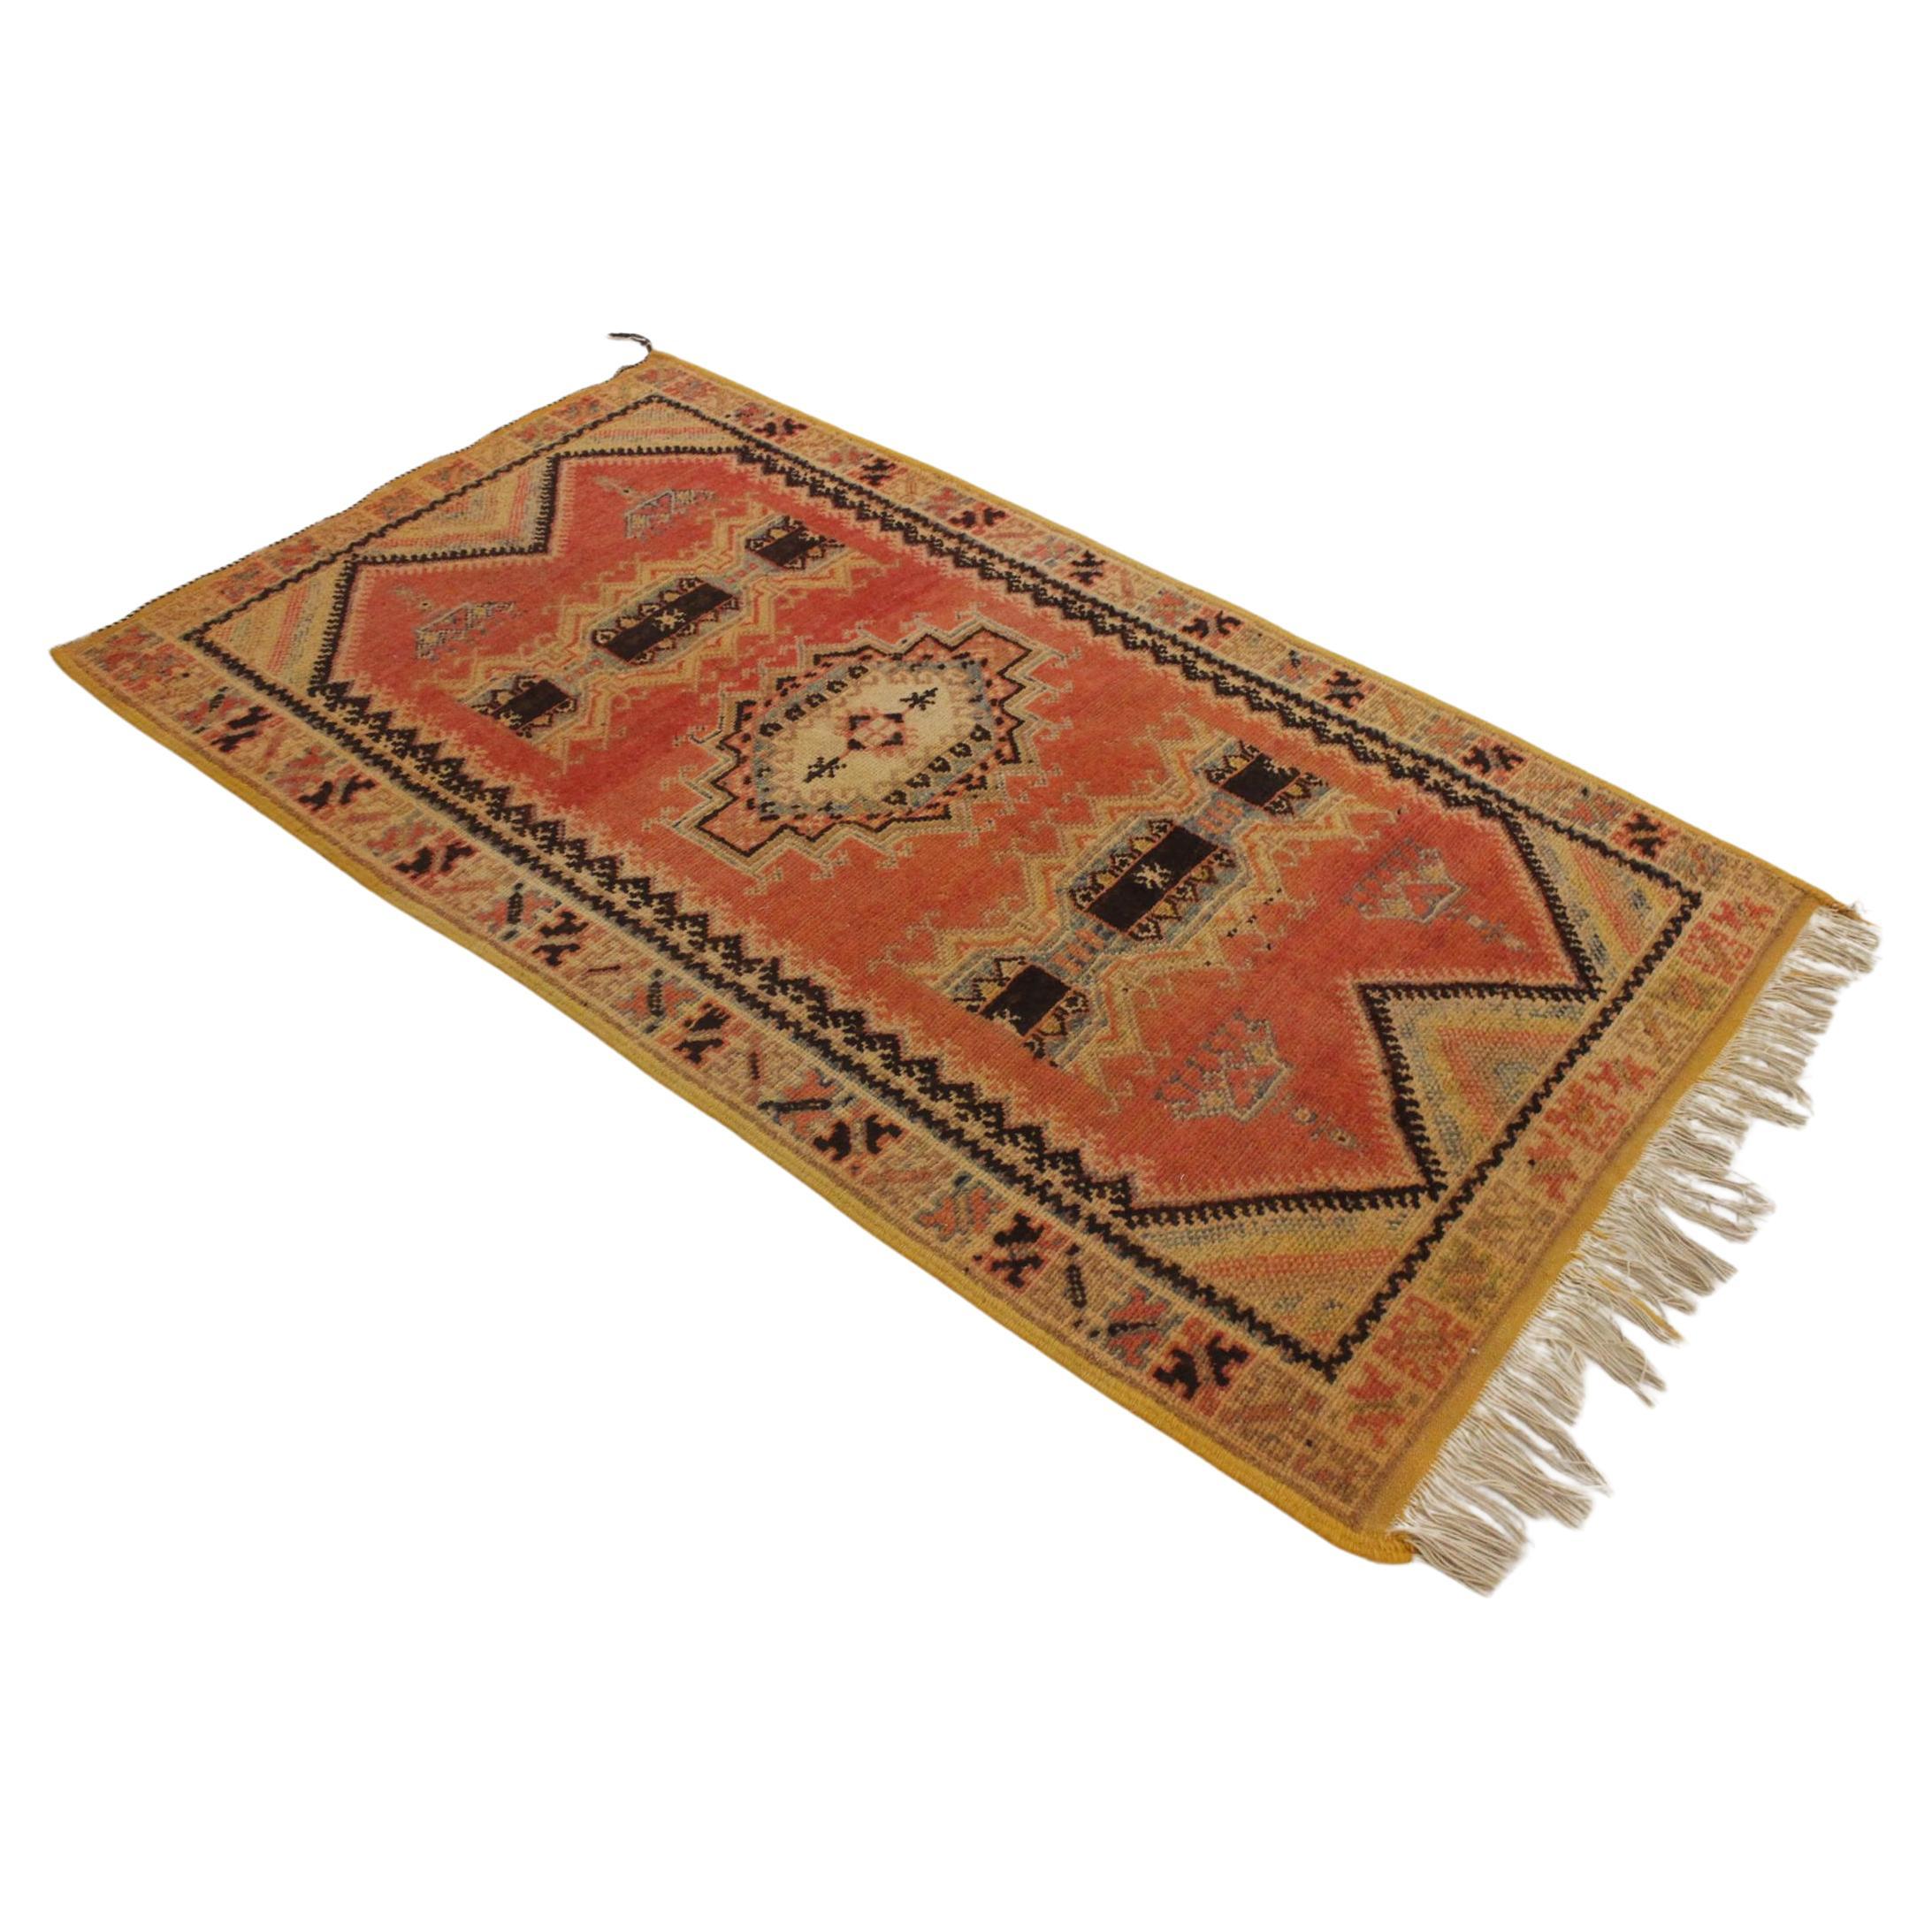 Vintage Moroccan Taznakht rug - Blood orange/black - 3.2x5.8feet / 100x178cm